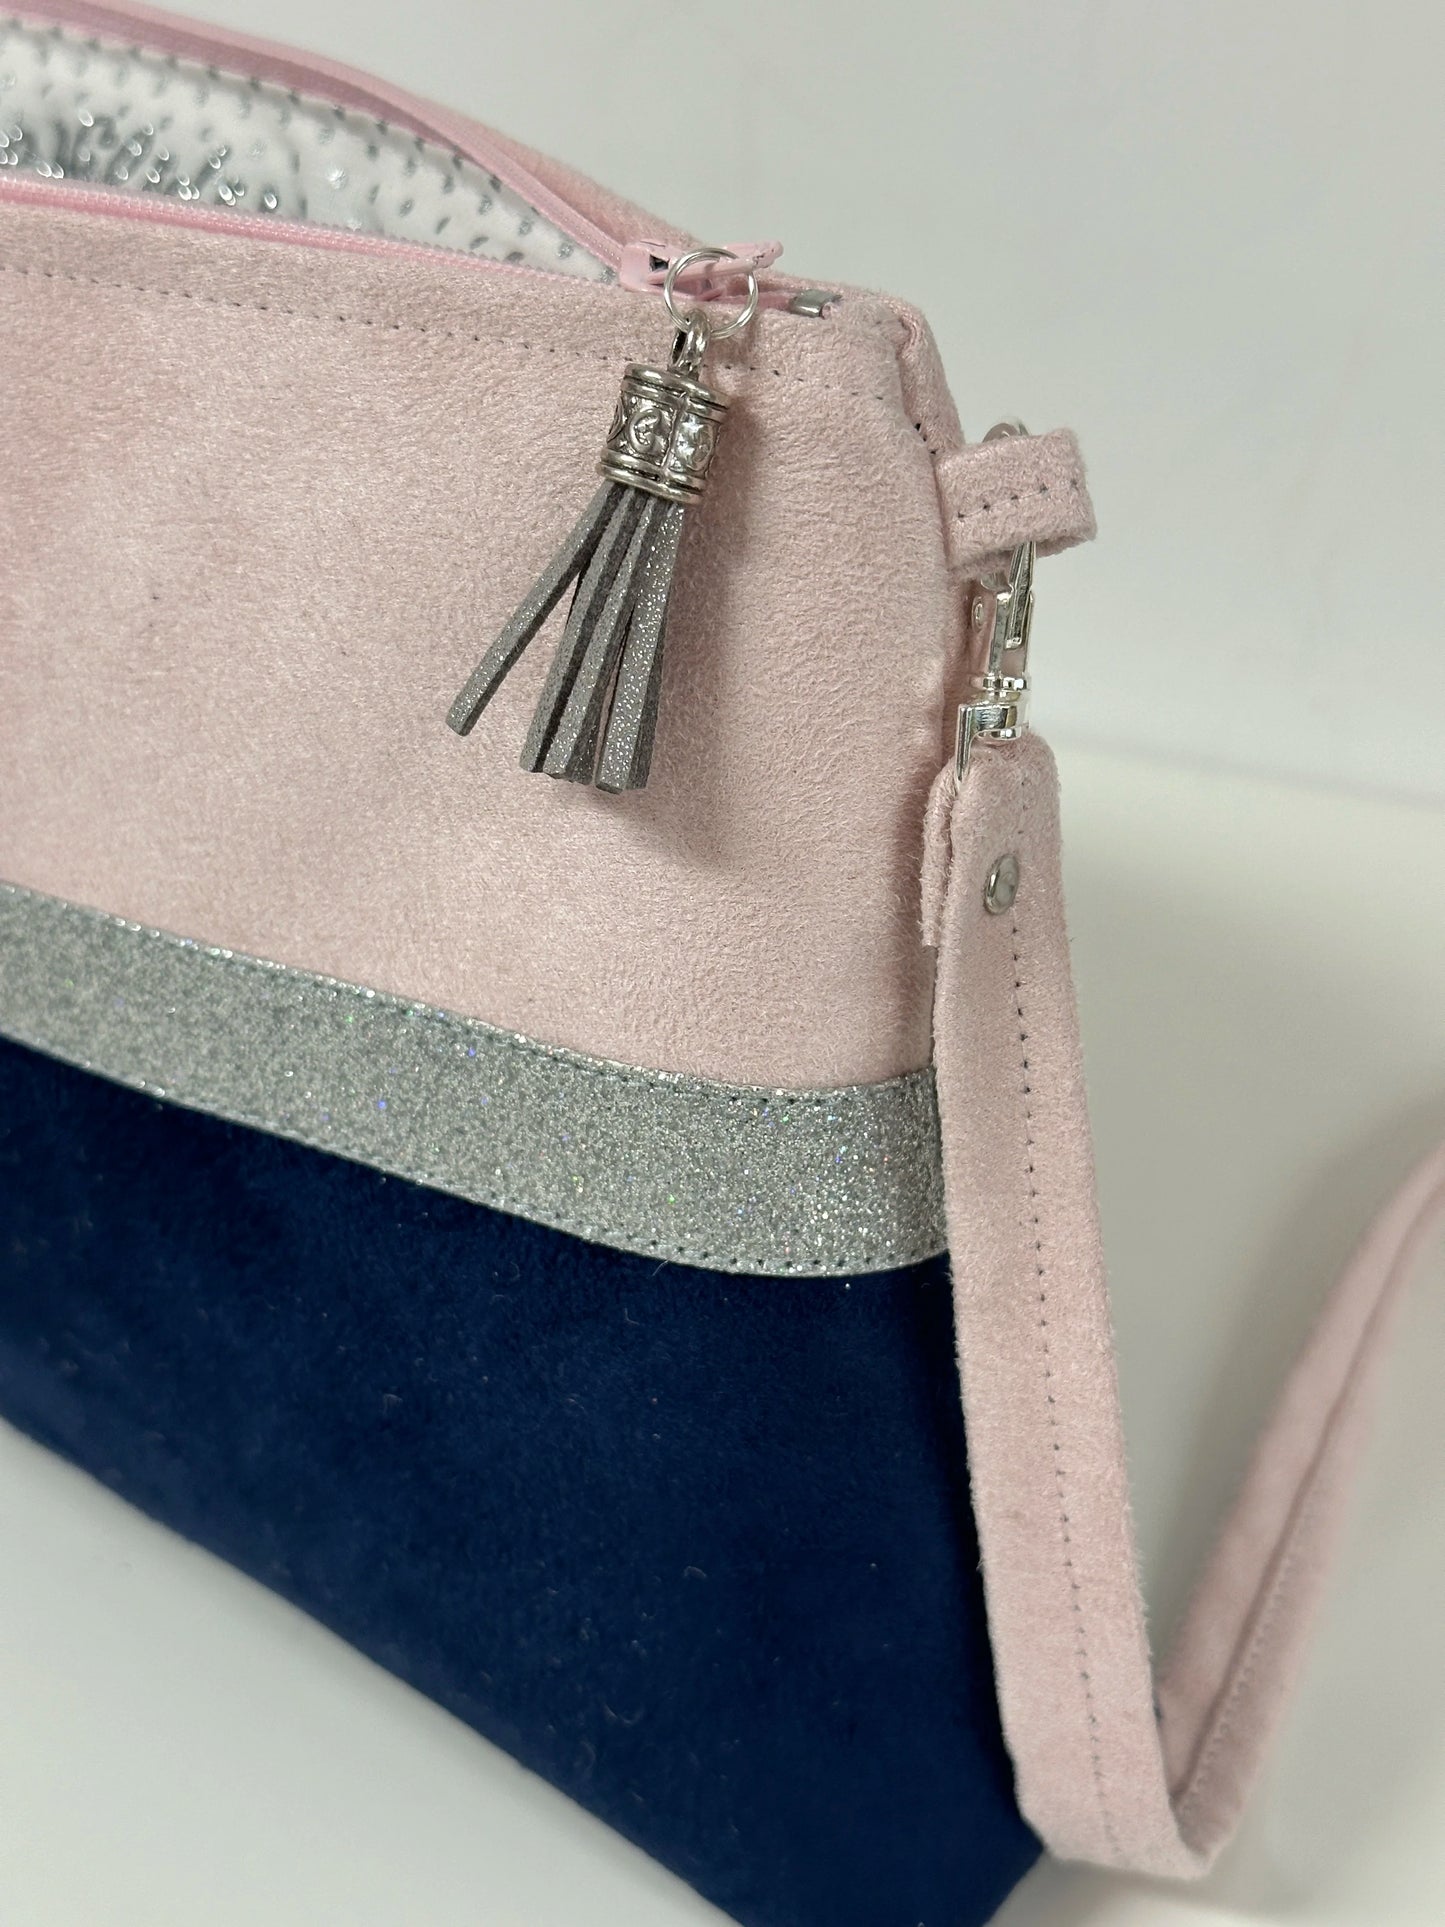 La bandoulière amovible du sac bandoulière rose pale et bleu marine à paillettes argentées.